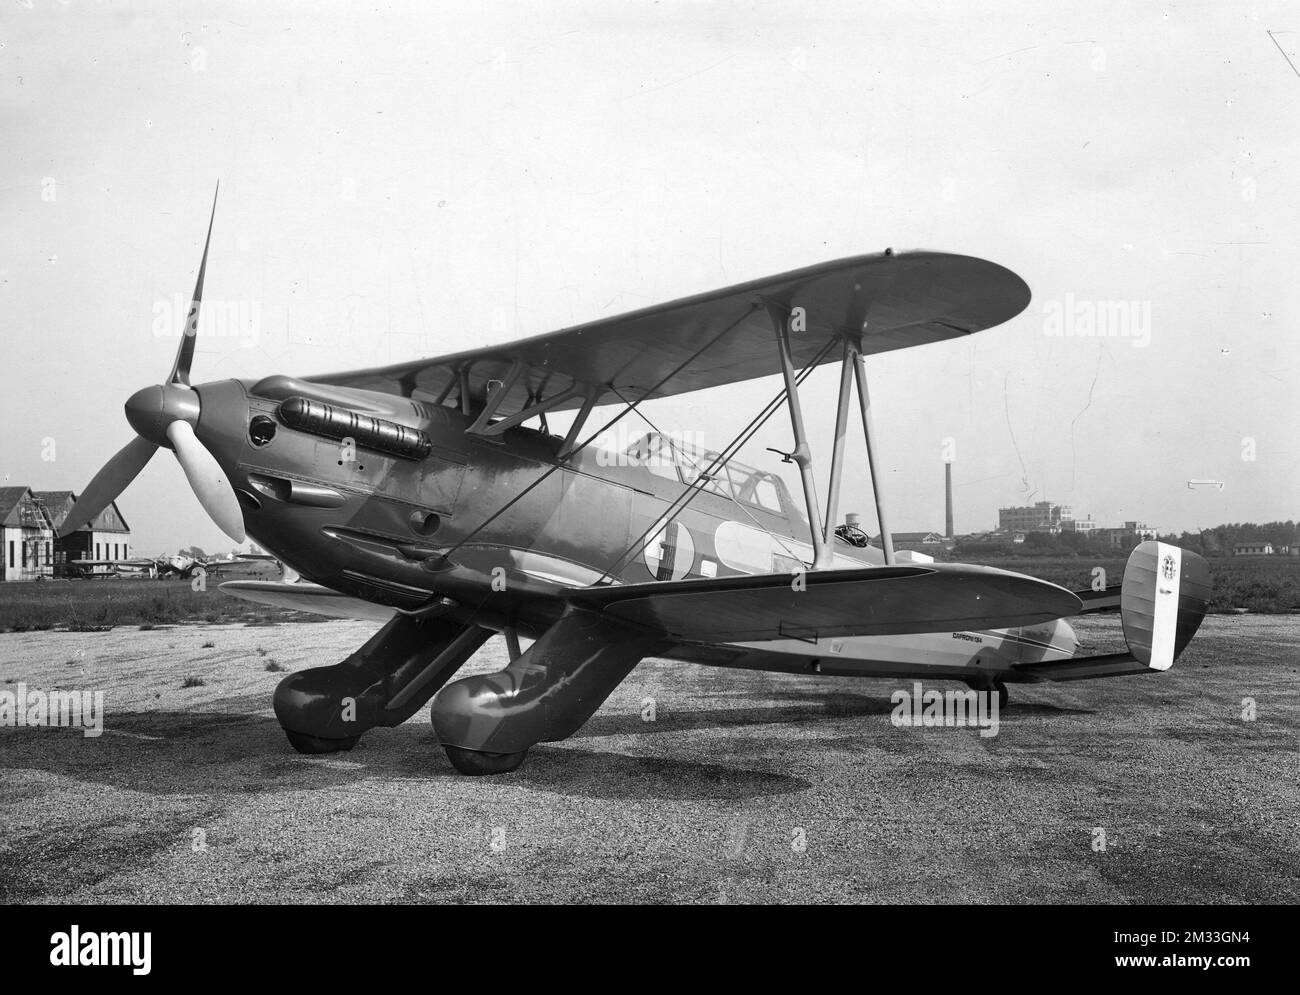 Aeroplani - Caproni Ca.134 monomotore da ricognizione biplano realizzato dall'azienda italiana Aeronautica Caproni negli anni trenta e rimasto allo stadio di prototipo. Stock Photo